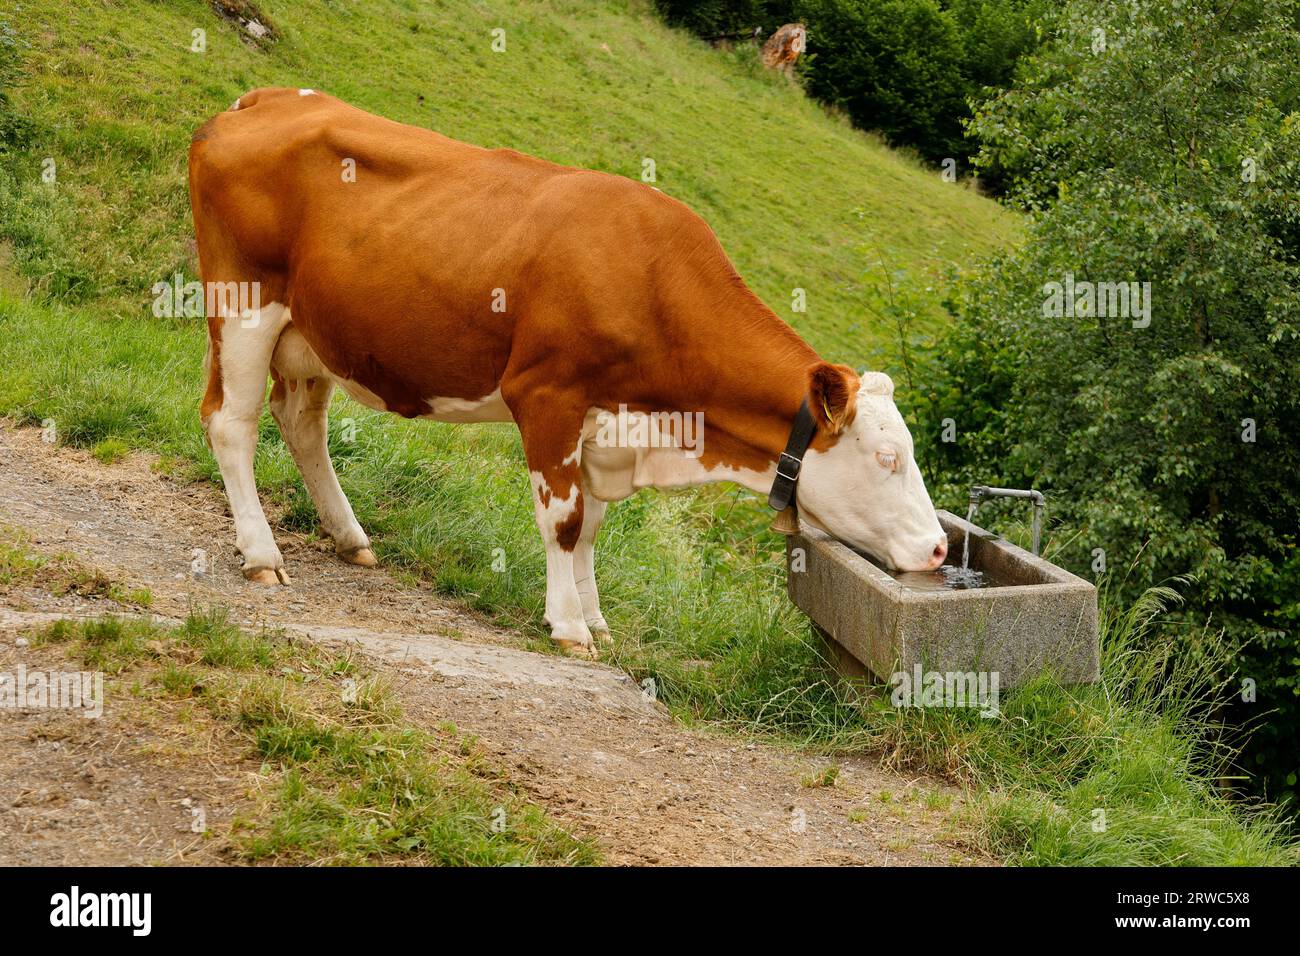 La vache boit de l'eau dans un abreuvoir pour animaux Banque D'Images